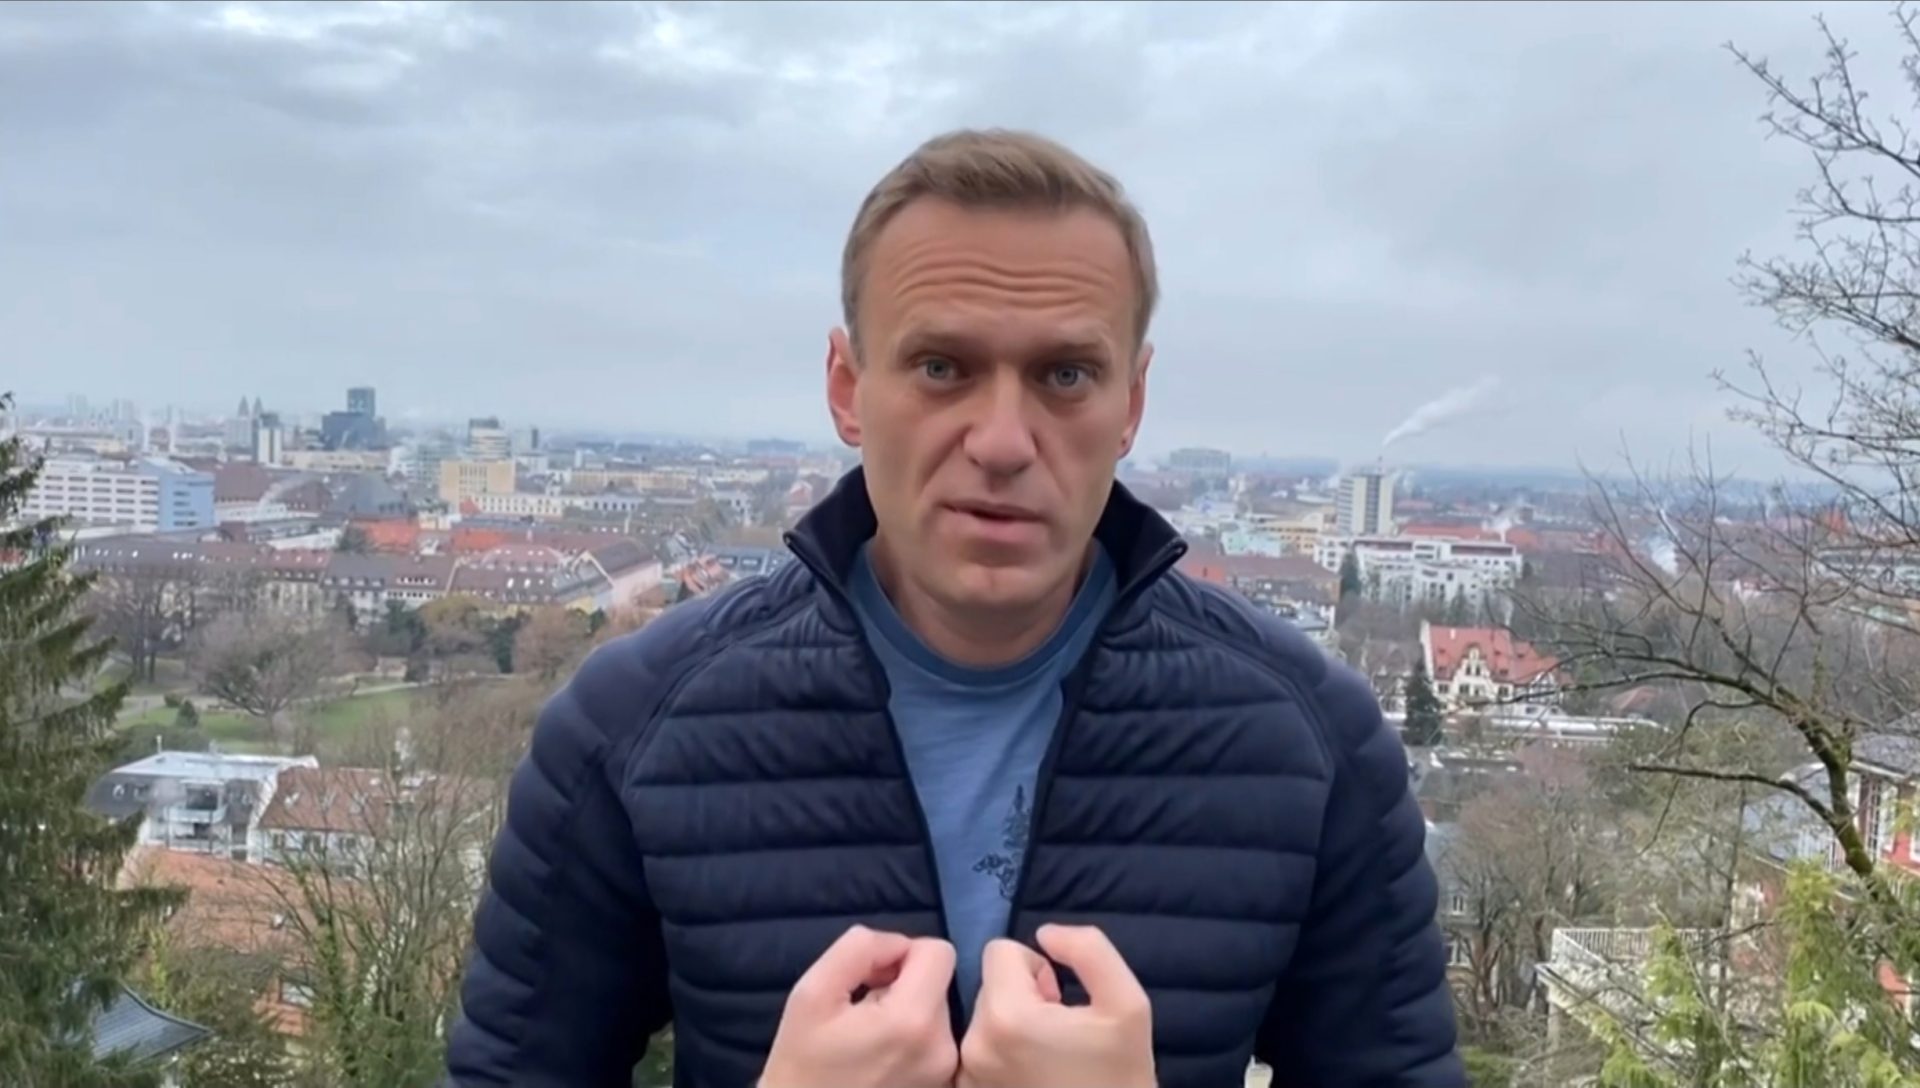 Tribunal russo declara Navalny culpado de “difamação” horas após outra sentença